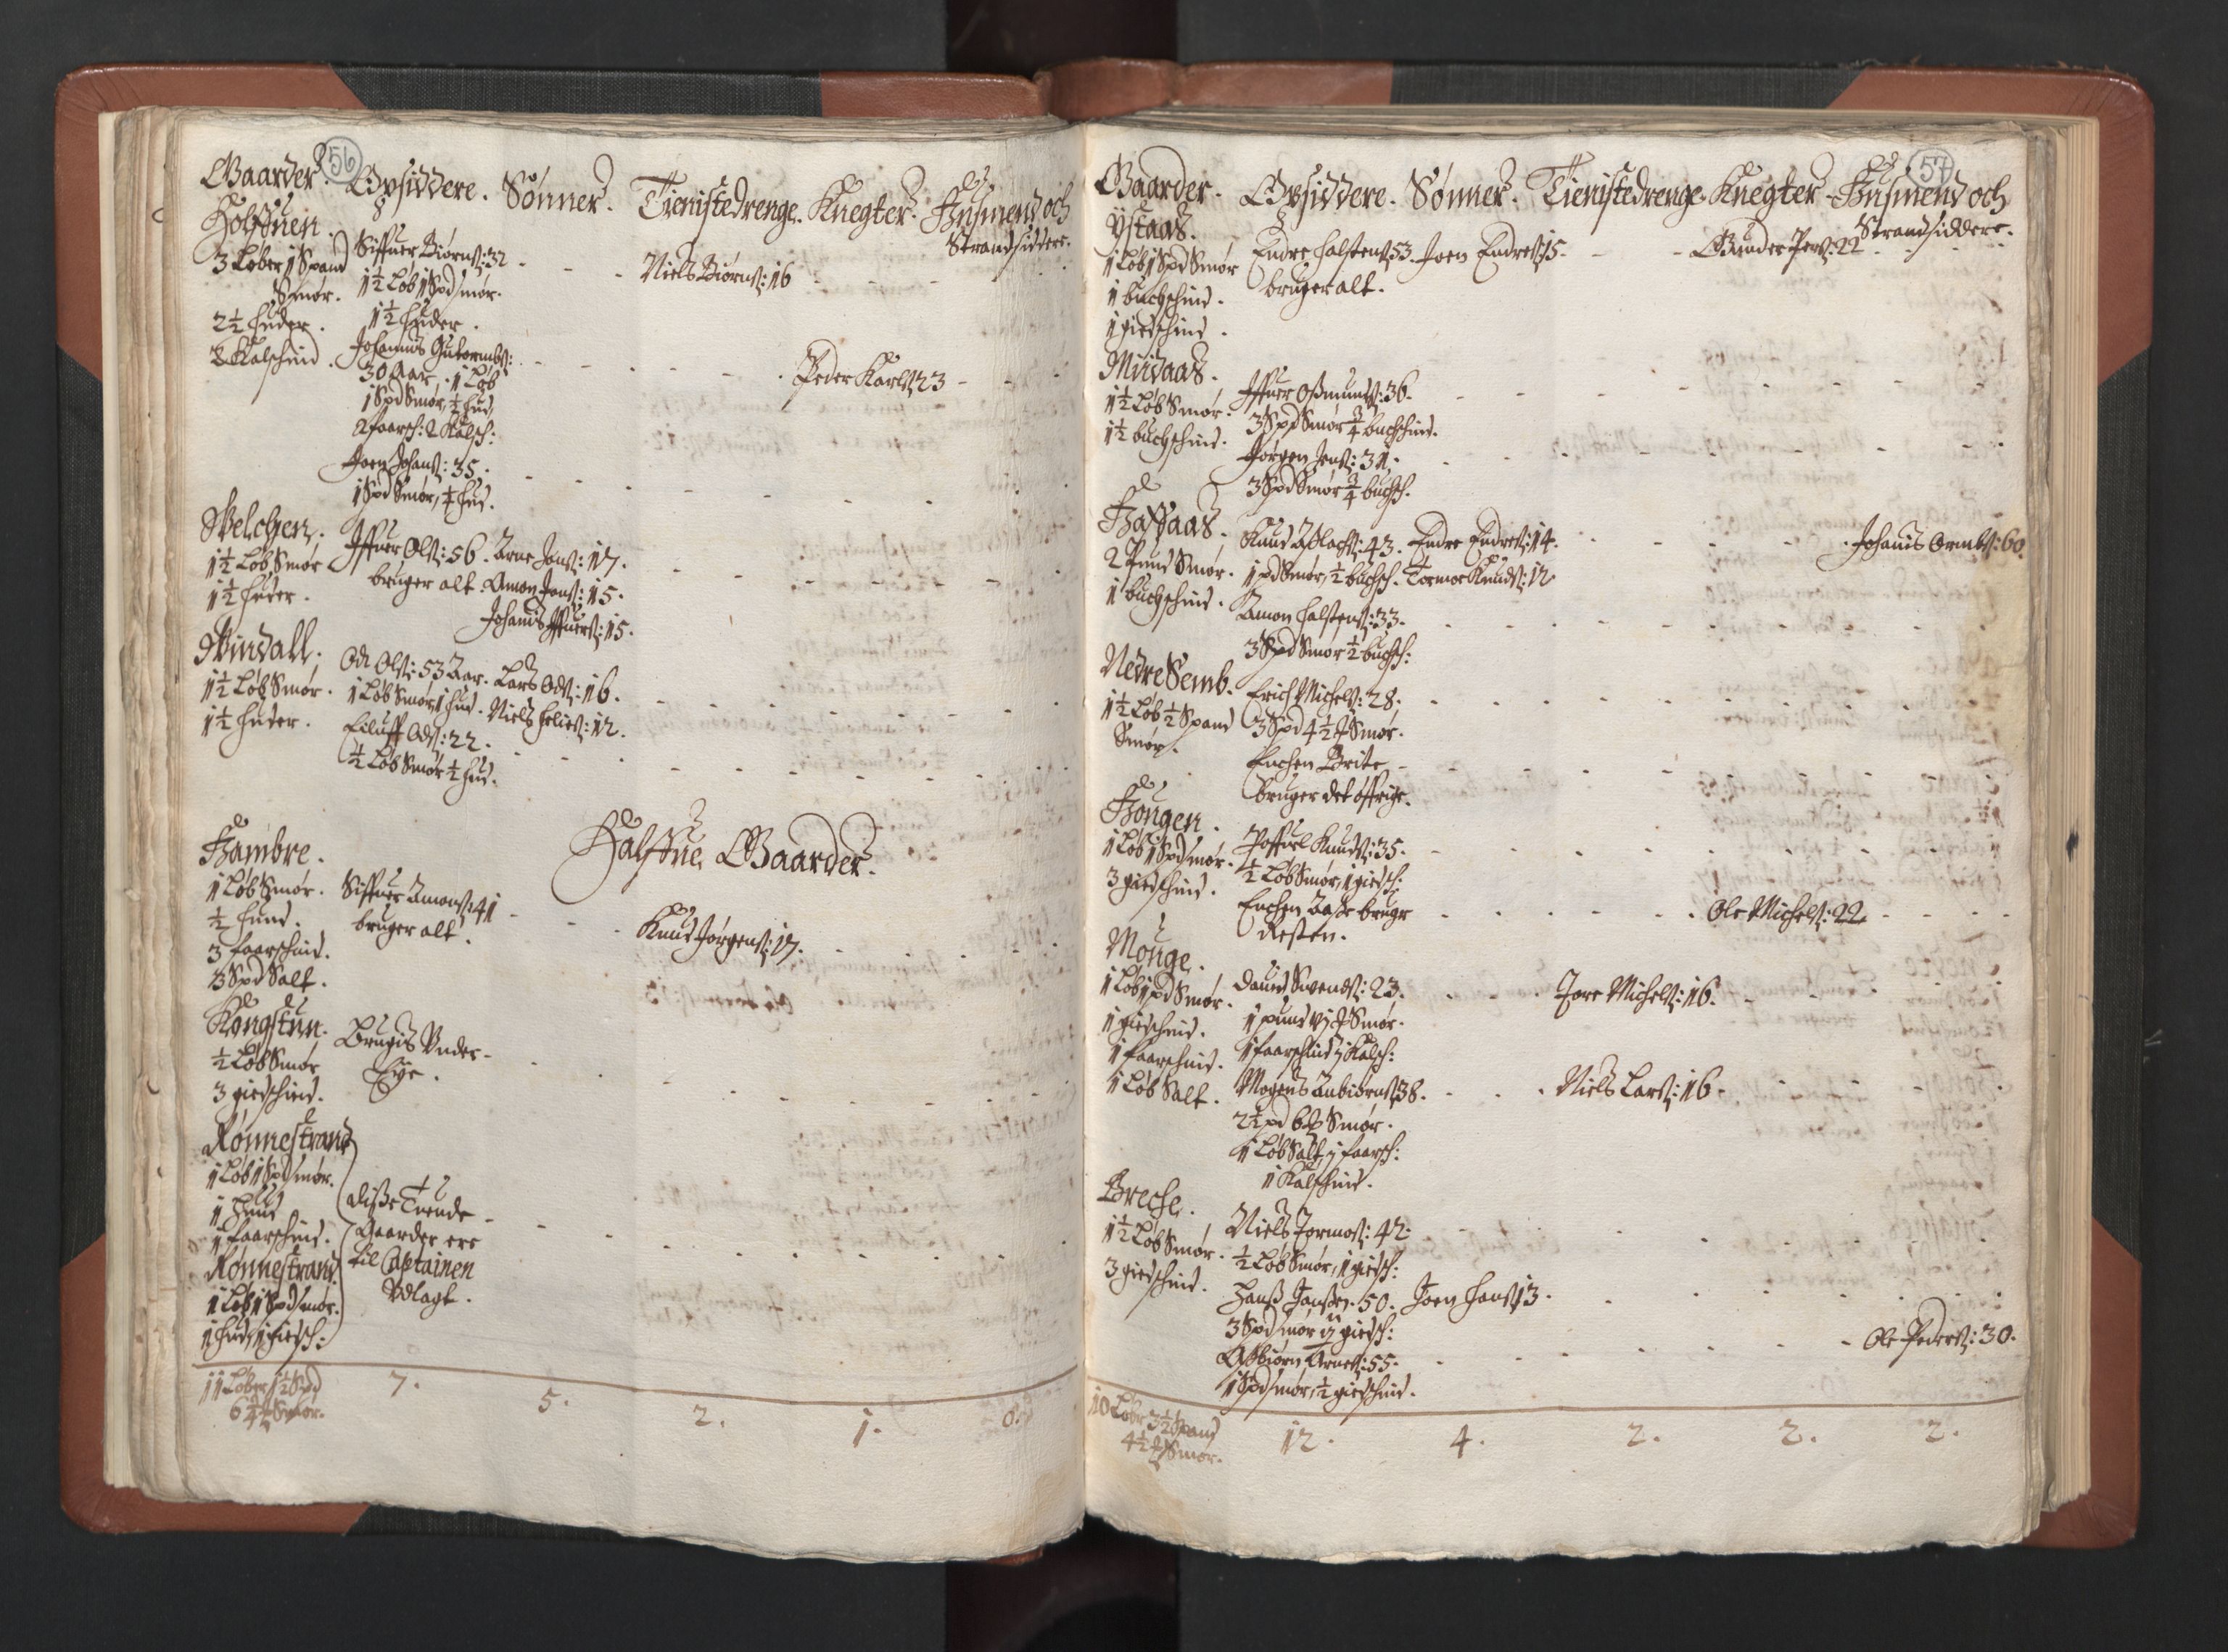 RA, Bailiff's Census 1664-1666, no. 14: Hardanger len, Ytre Sogn fogderi and Indre Sogn fogderi, 1664-1665, p. 56-57